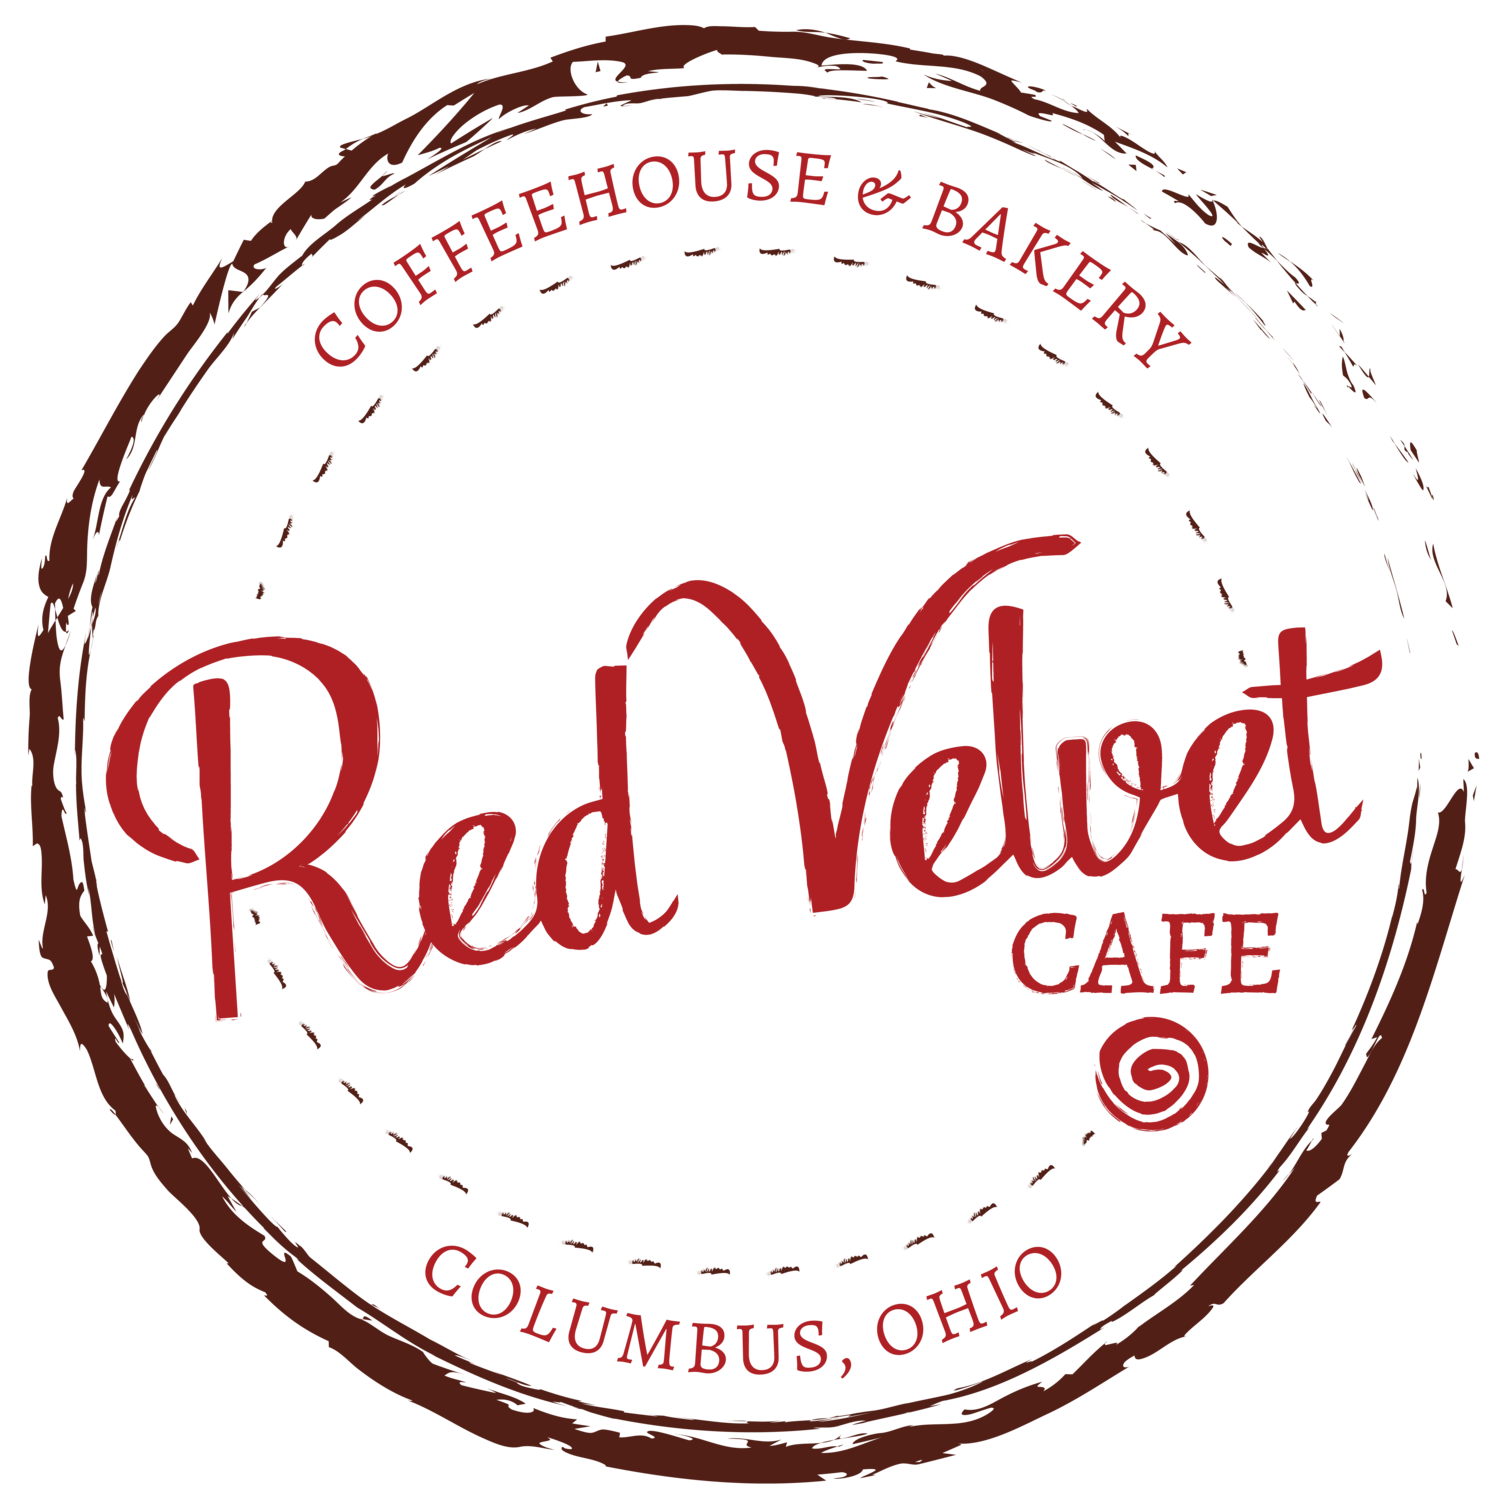 Cute Cafe Logo - Red Velvet Cafe [Columbus, OH]